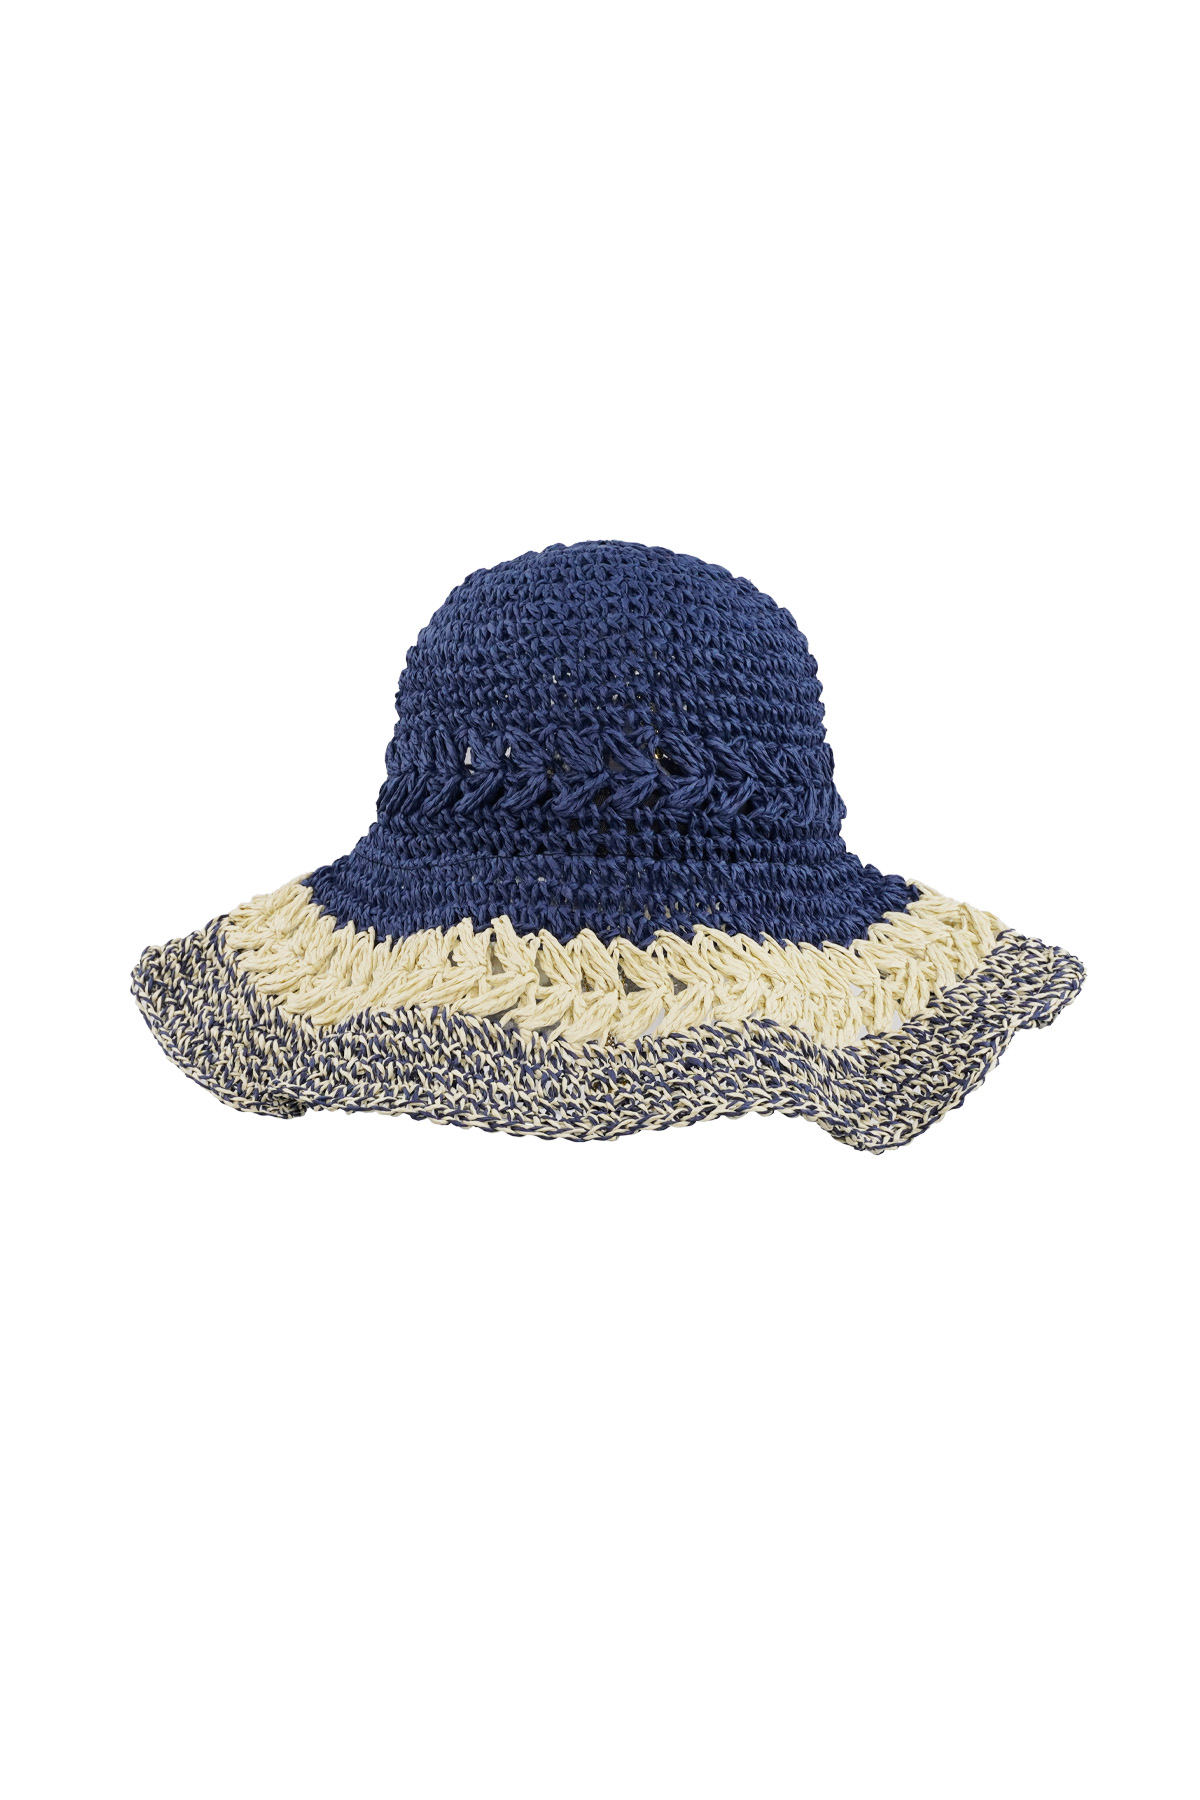 Geflochtene Mütze mit Lagen - marineblau